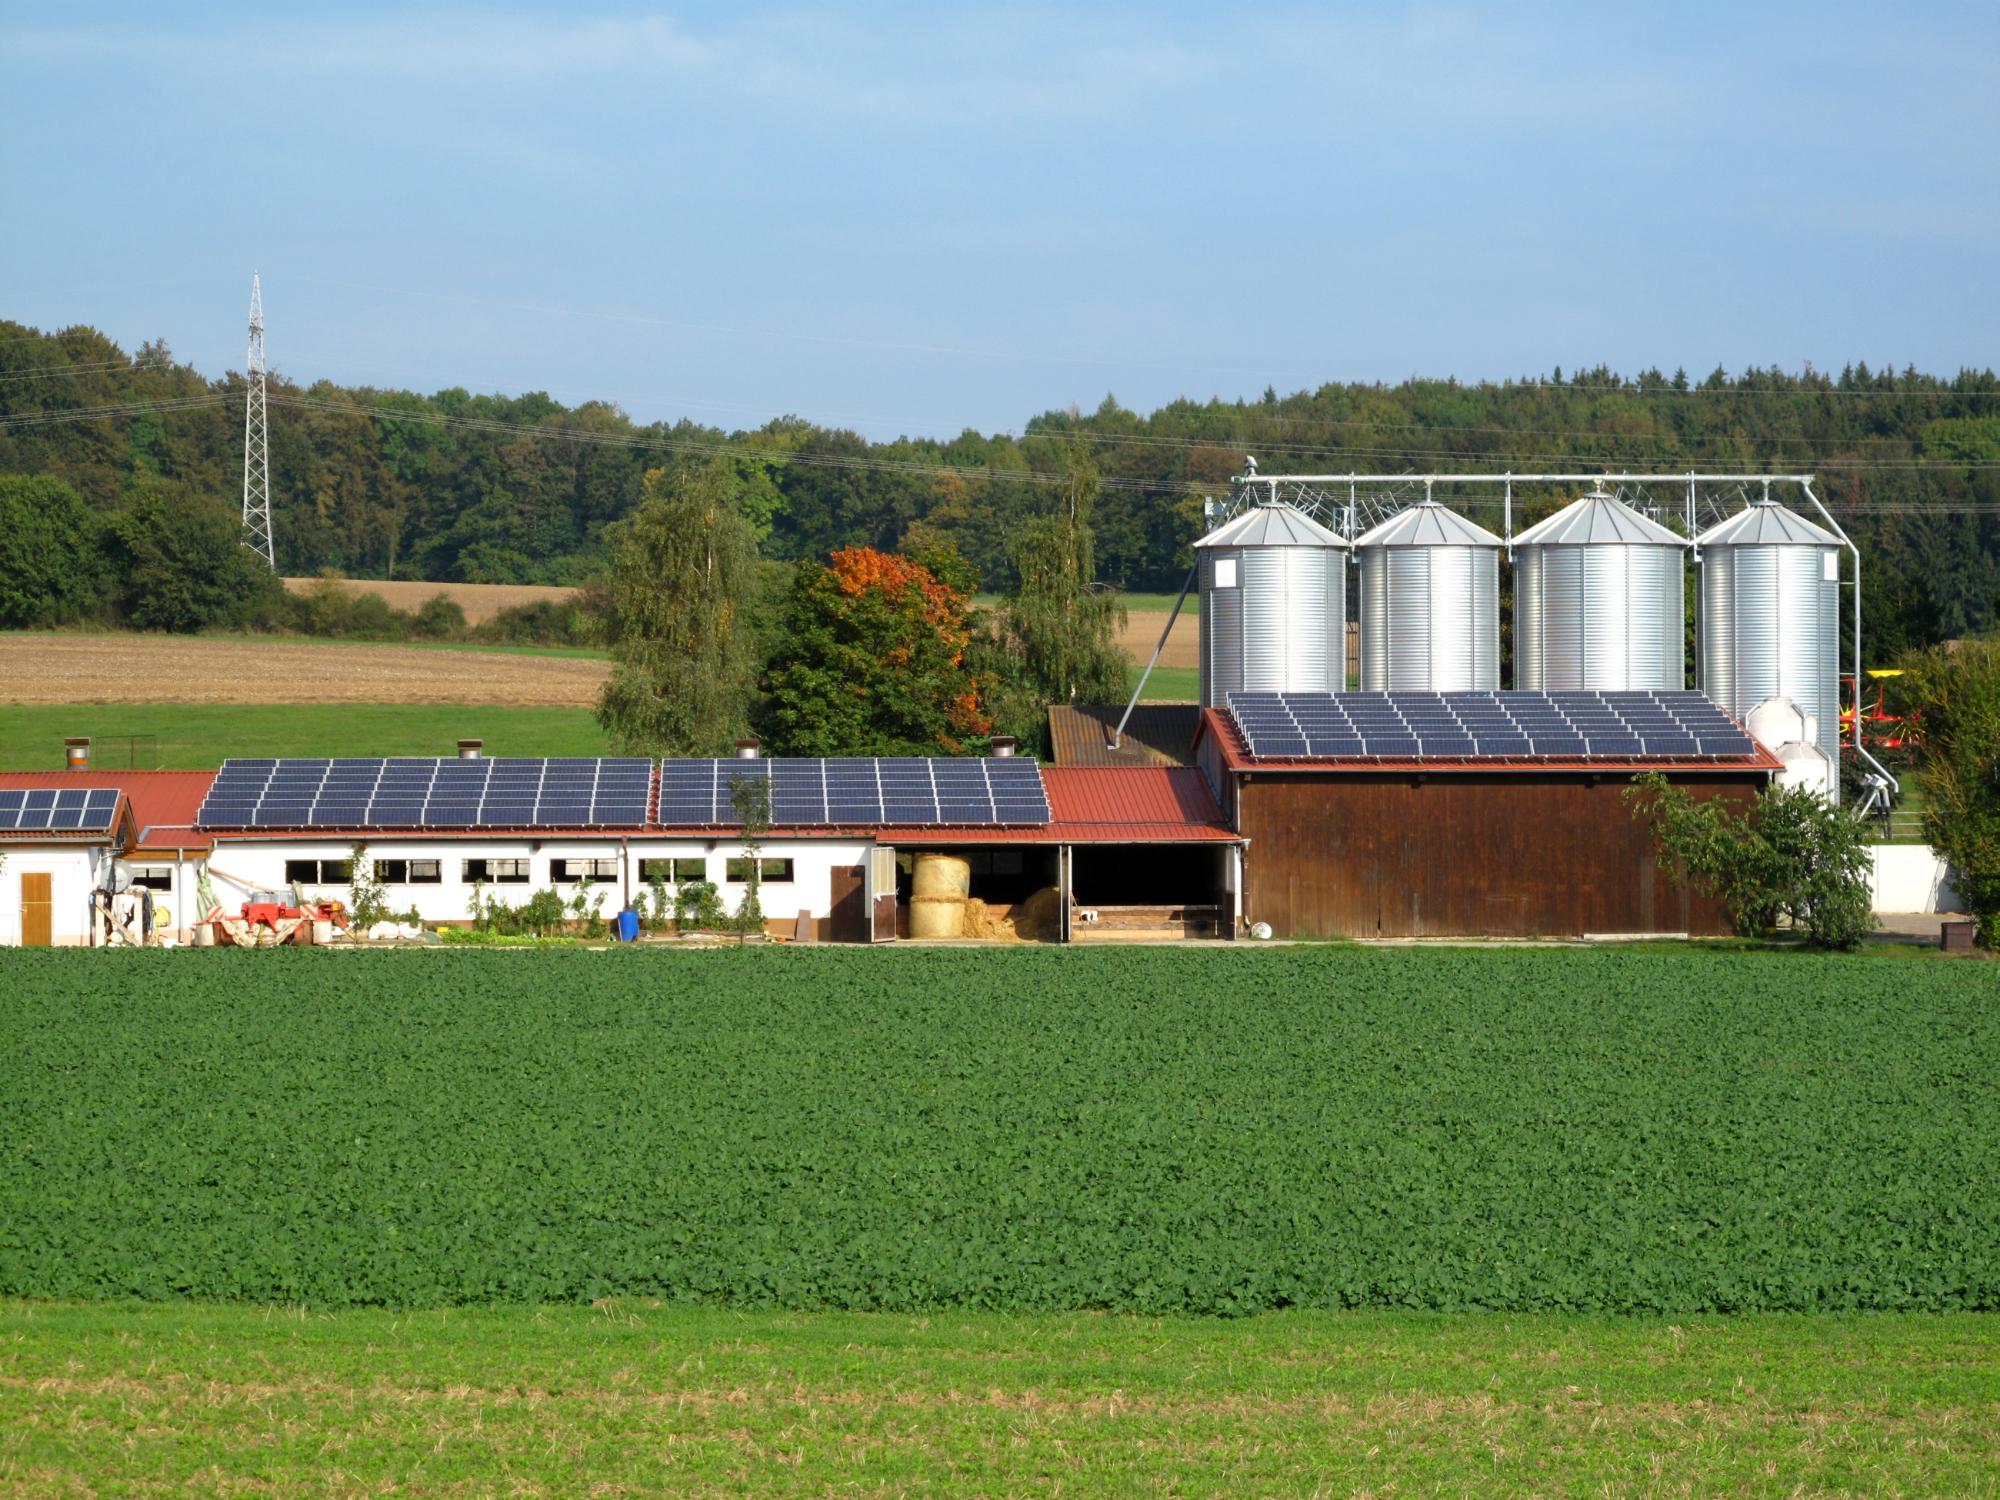 Farmhouse with solar panels